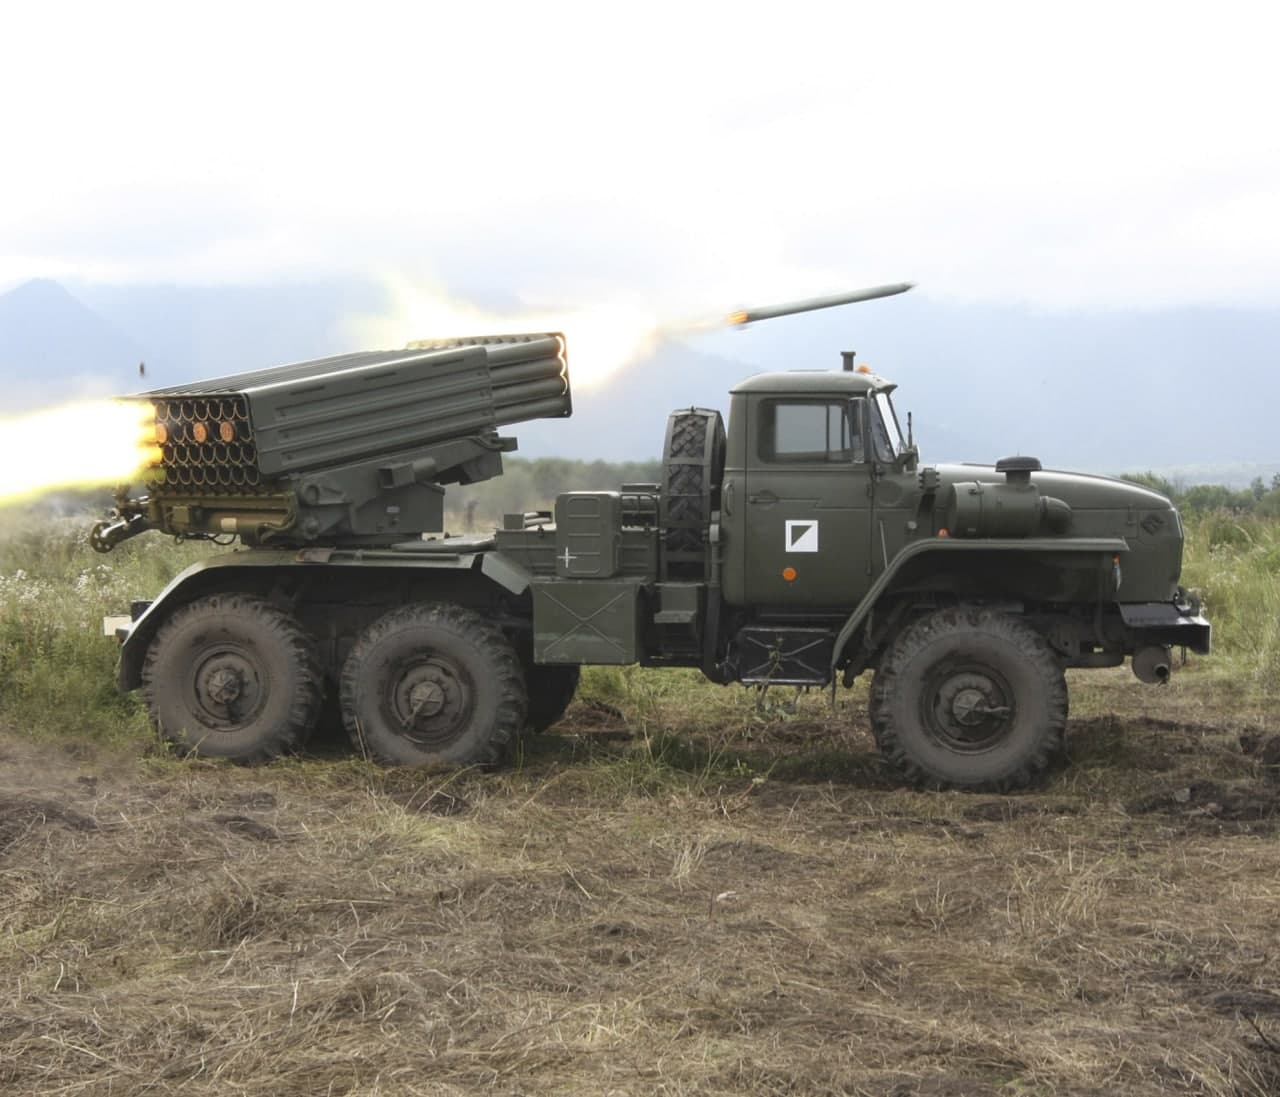 «Сплав» представил в Минске снаряды повышенной эффективности 